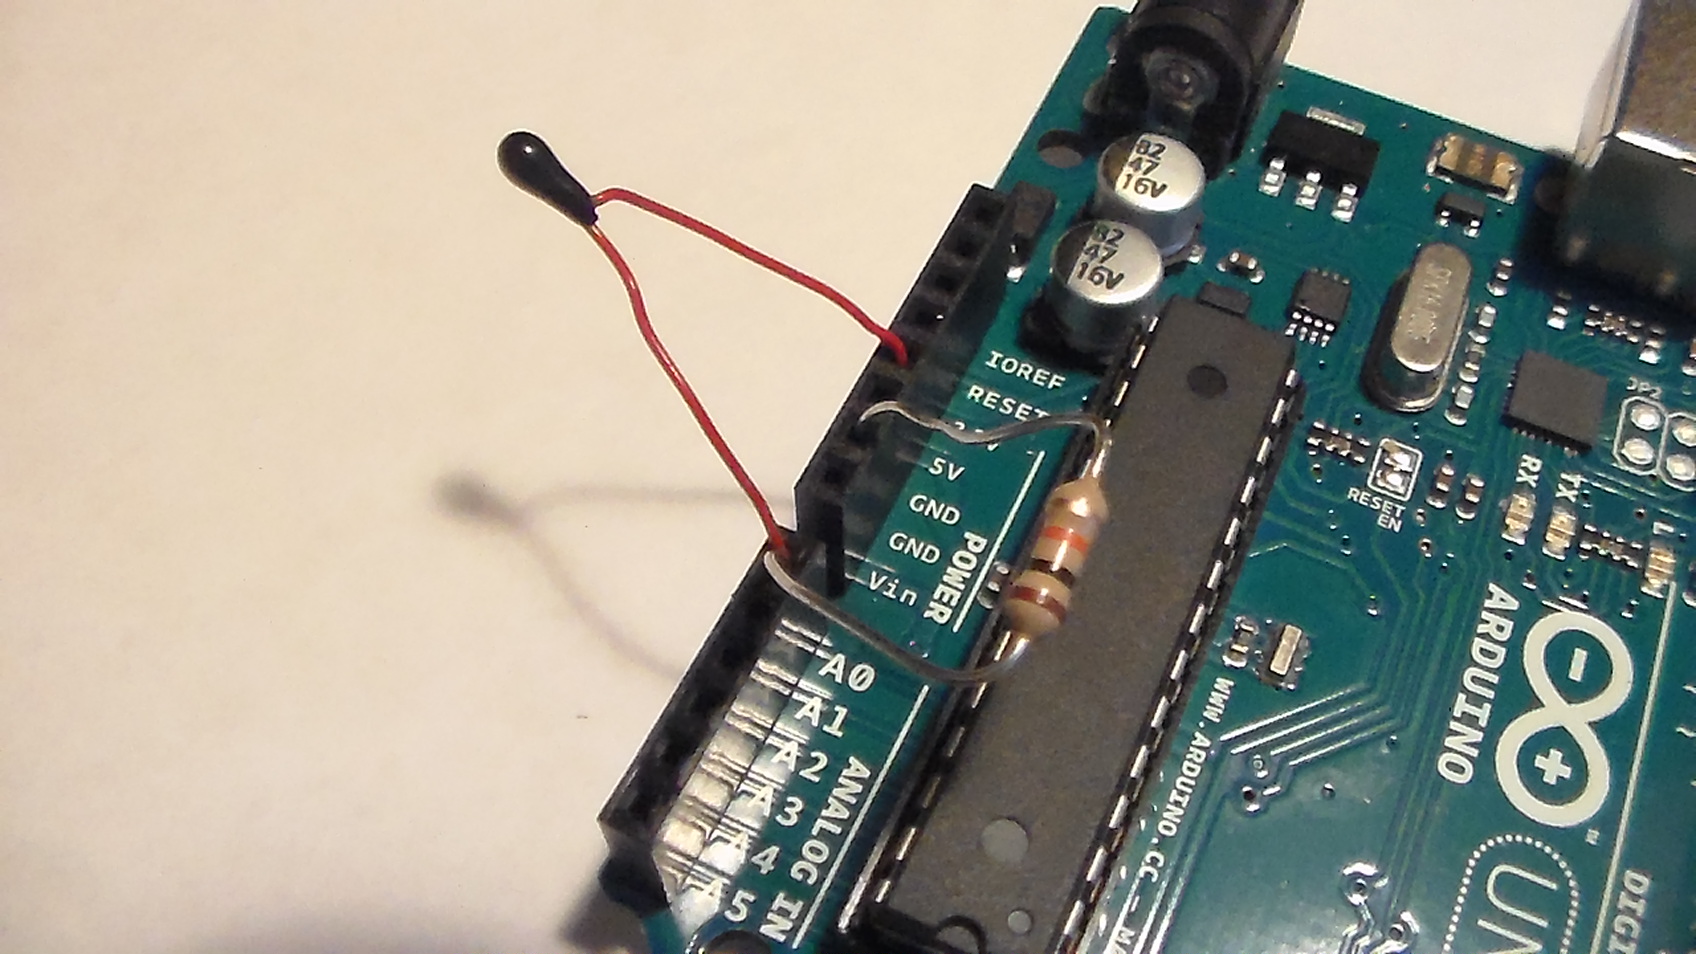 Макет измерения температуры с помощью Arduino и NTC термистора